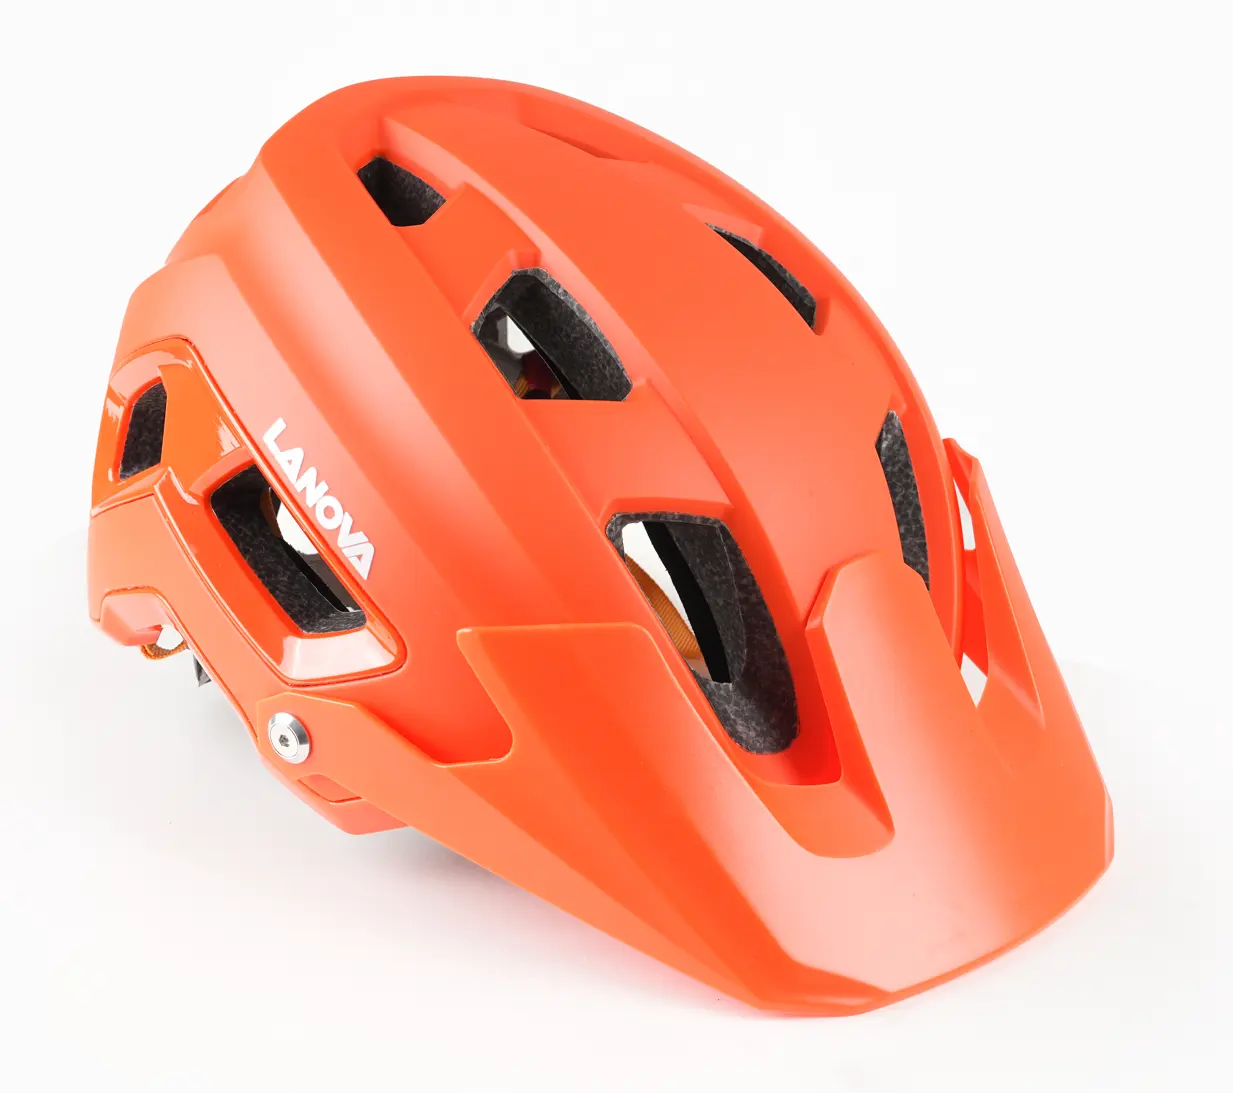 Nouveau design de casque de vélo vtt adulte avec visière intégrée en PC portable pour casques de vélo d'équitation en plein air